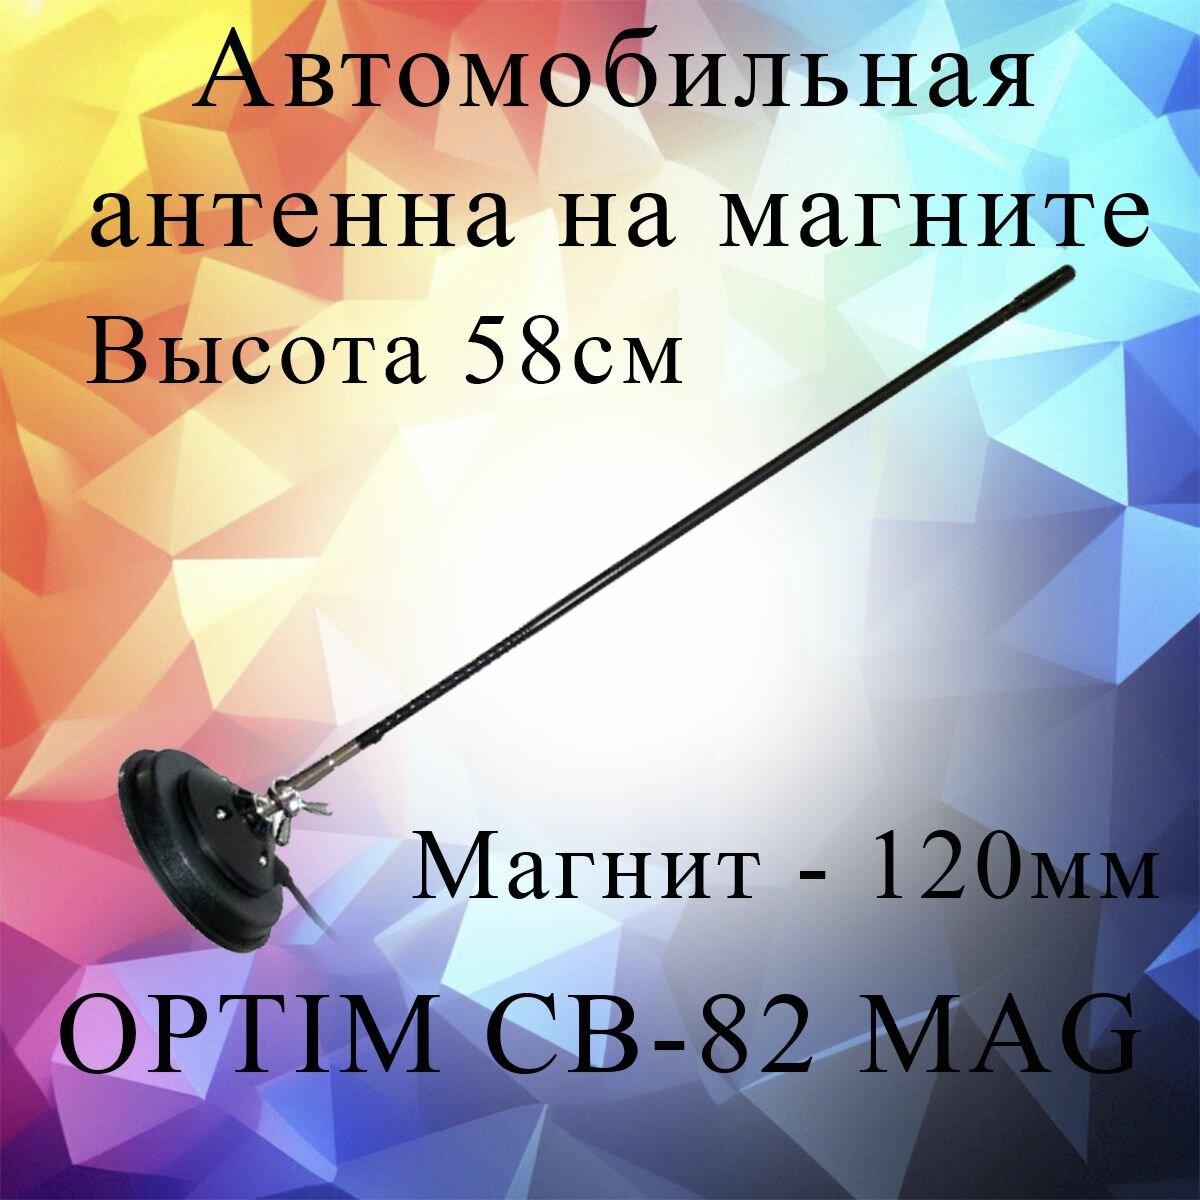 Автомобильная антенна на магните OPTIM CB-82 MAG